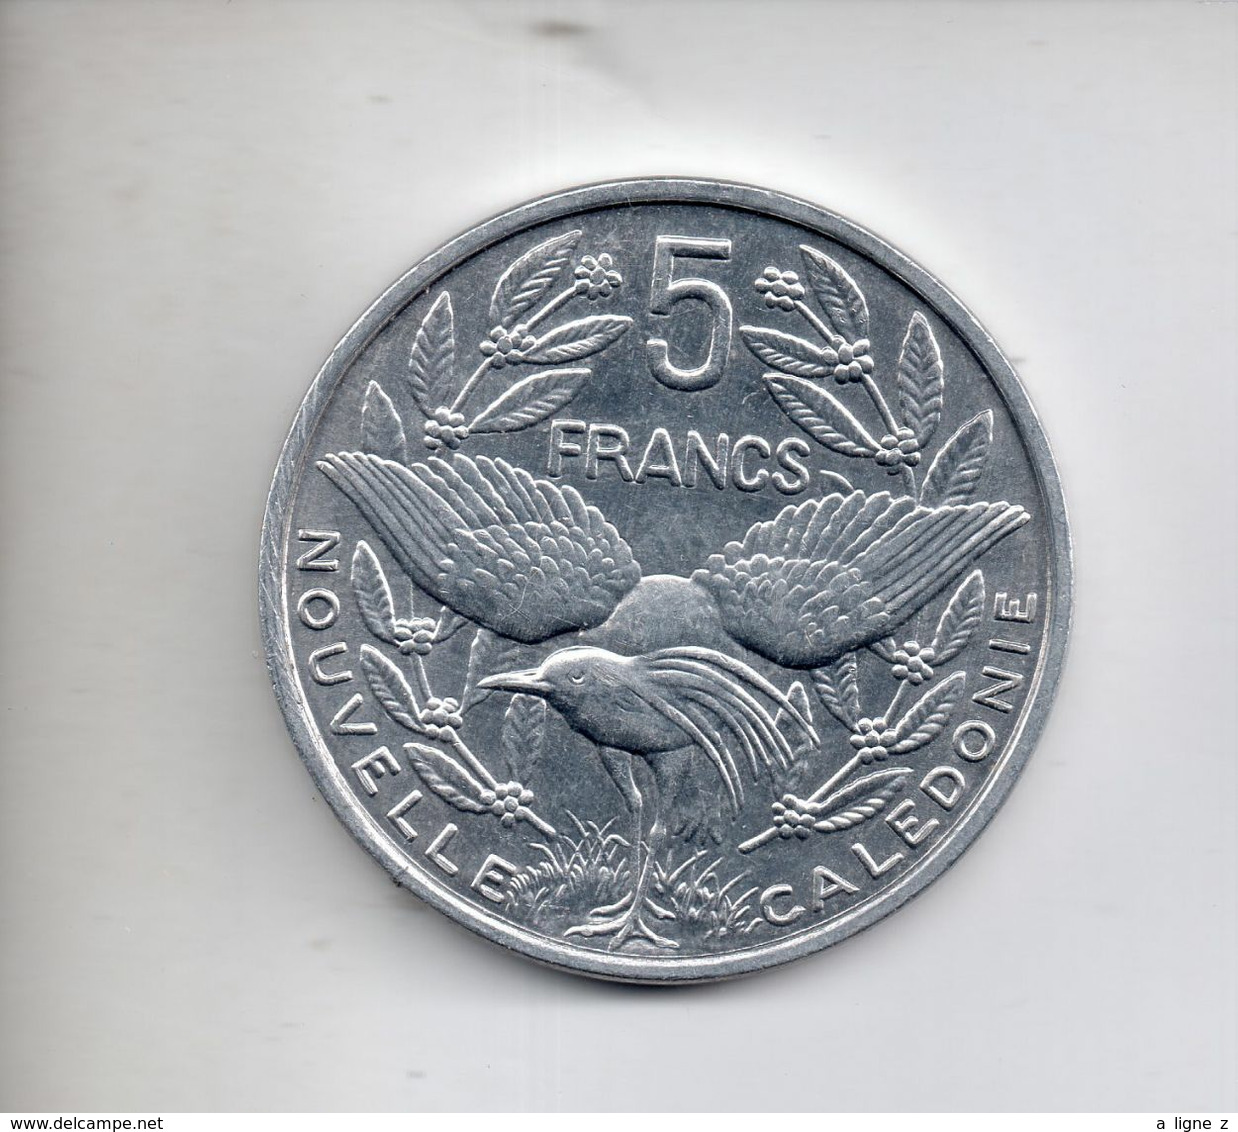 REF MON6 Monnaie Coin Nouvelle Calédonie 5 Francs 1994 TTB/SUP - Nouvelle-Calédonie